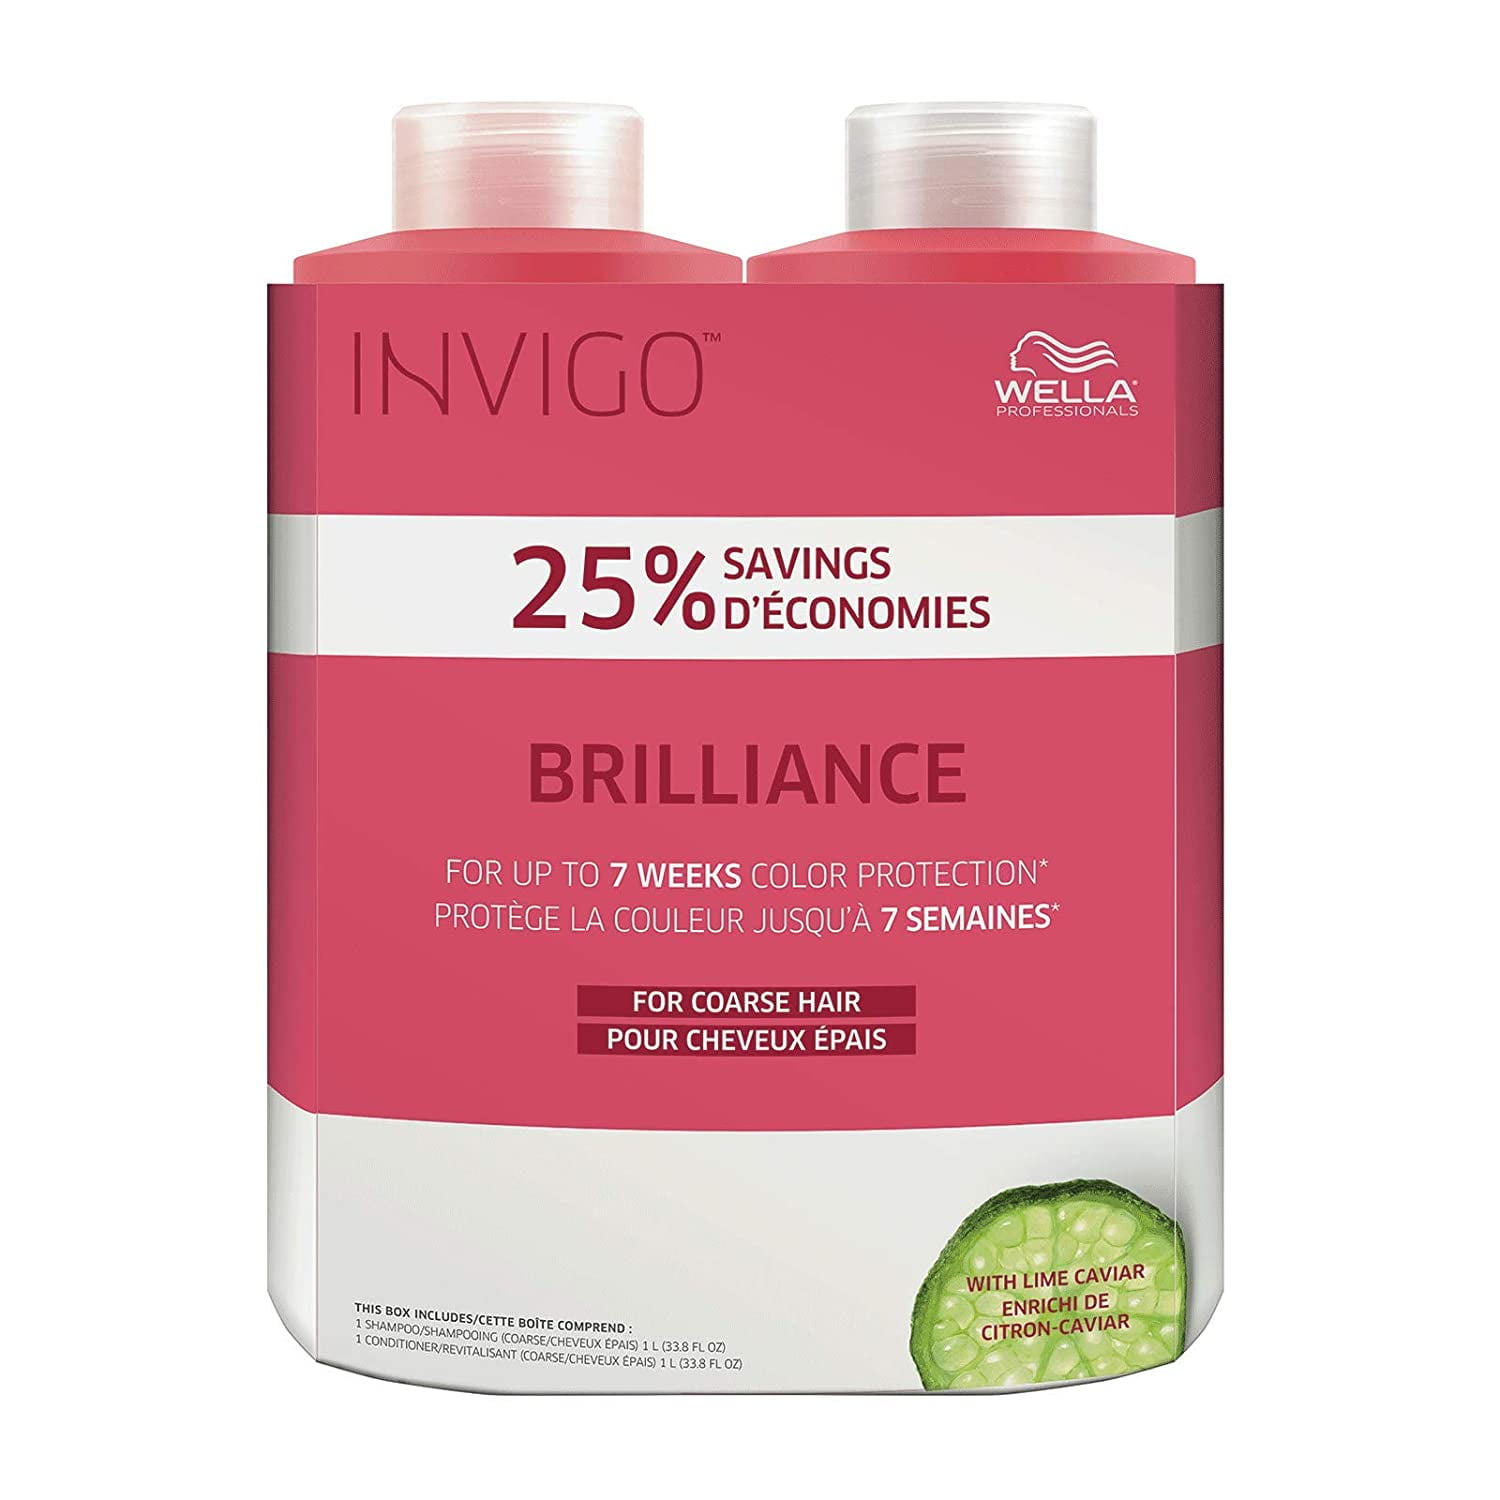 Wella Invigo Brilliance Shampoo & Conditioner for Coarse Liter 33.8 - Walmart.com